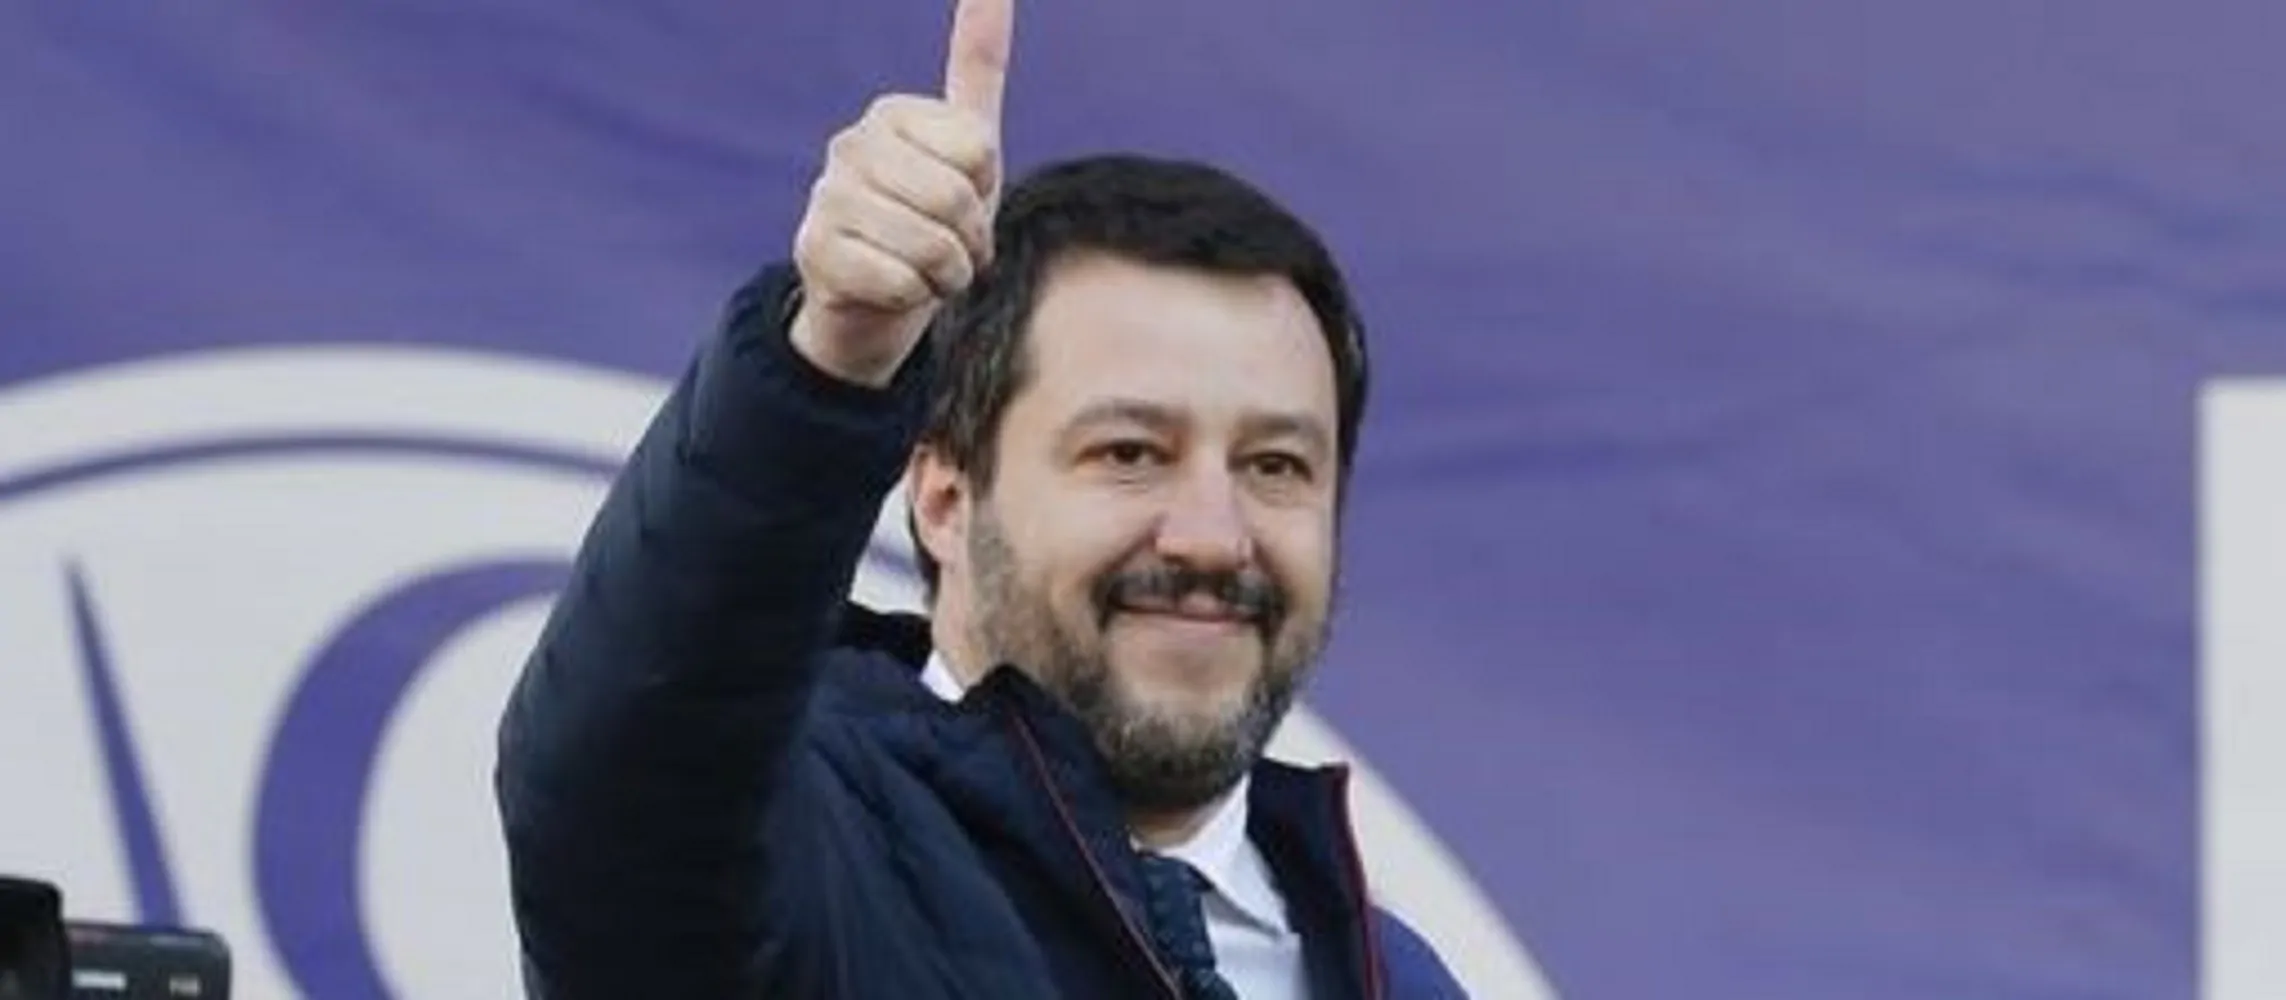 Matteo Salvini promette: "Zero campi rom entro 2023"